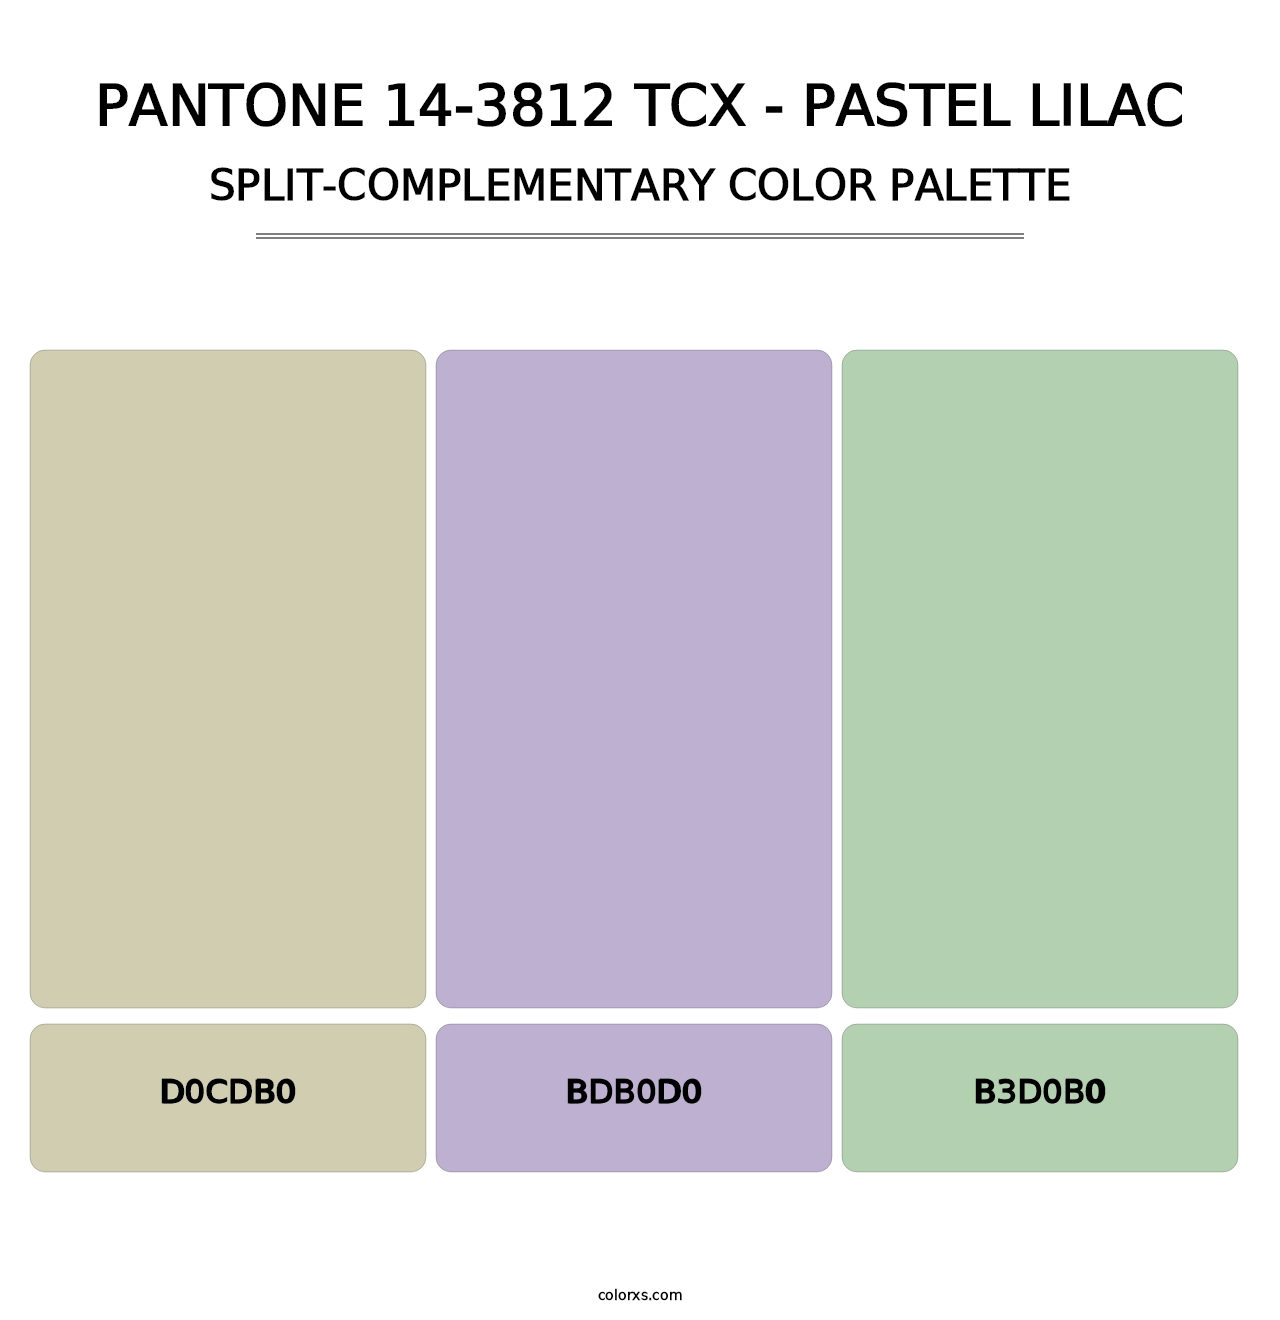 PANTONE 14-3812 TCX - Pastel Lilac - Split-Complementary Color Palette